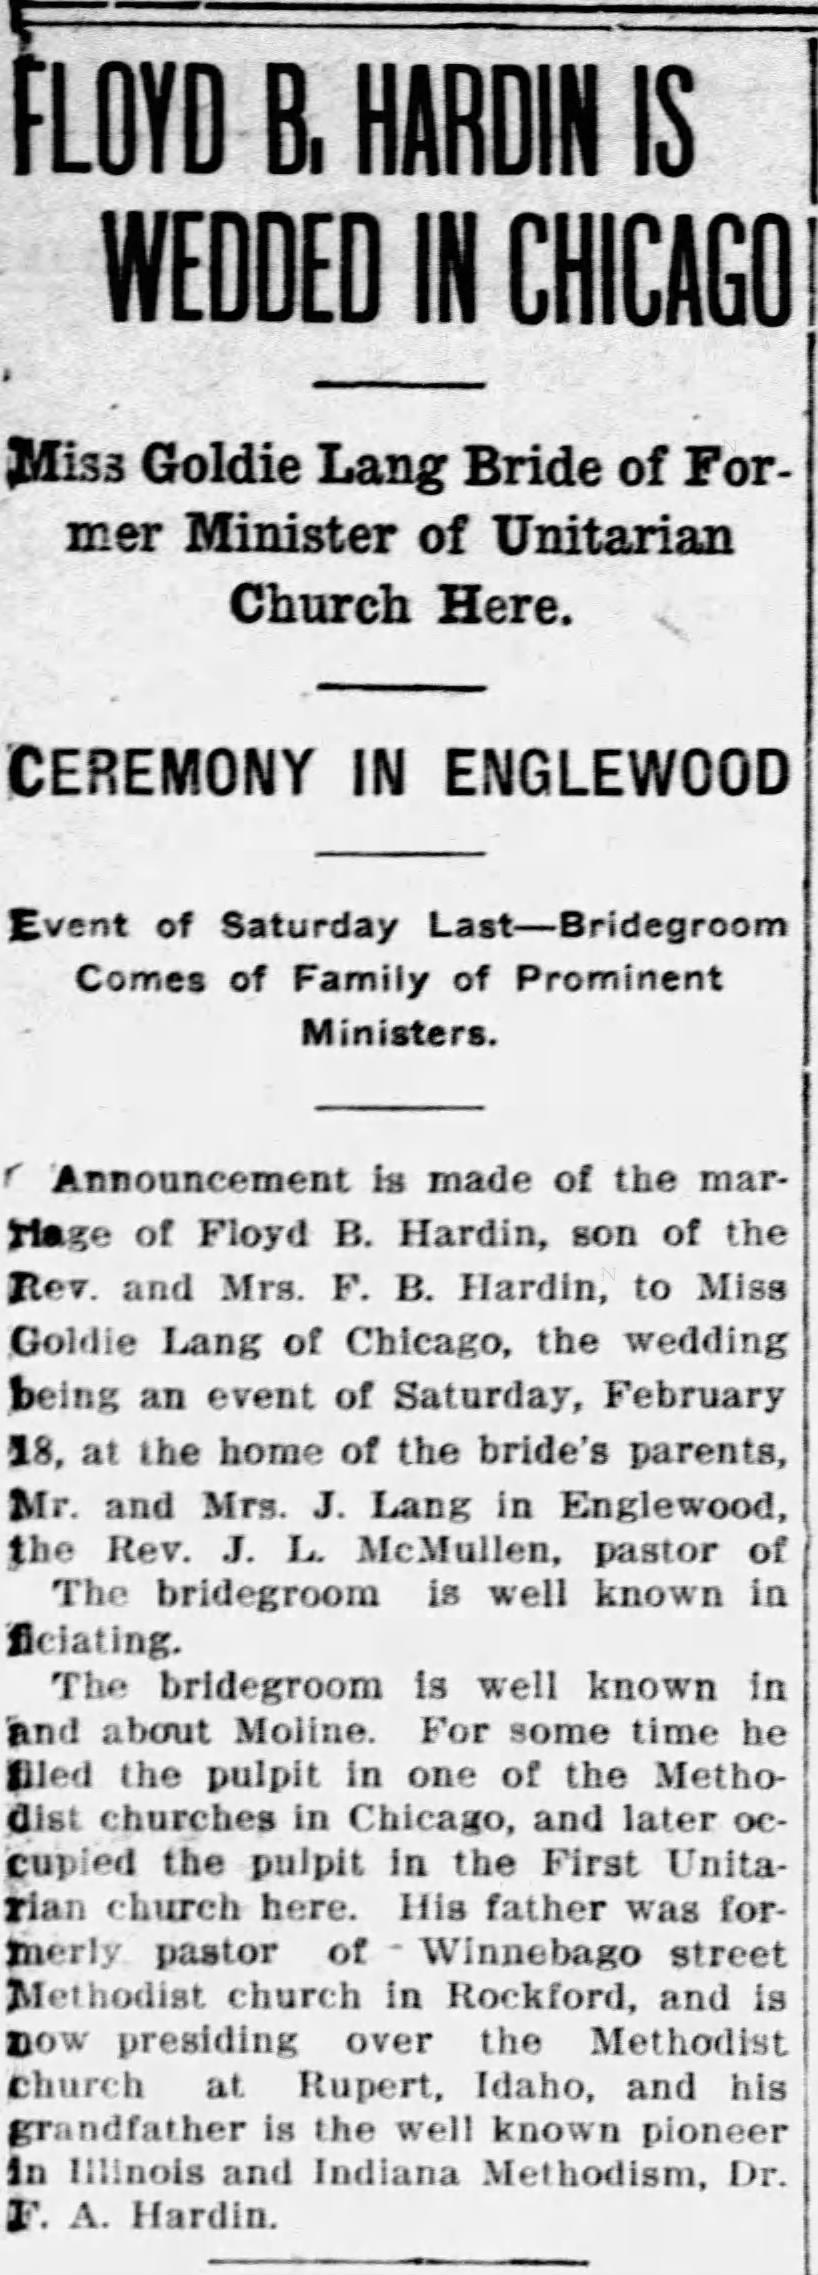 Floyd B Hardin is Wedded in Chicago